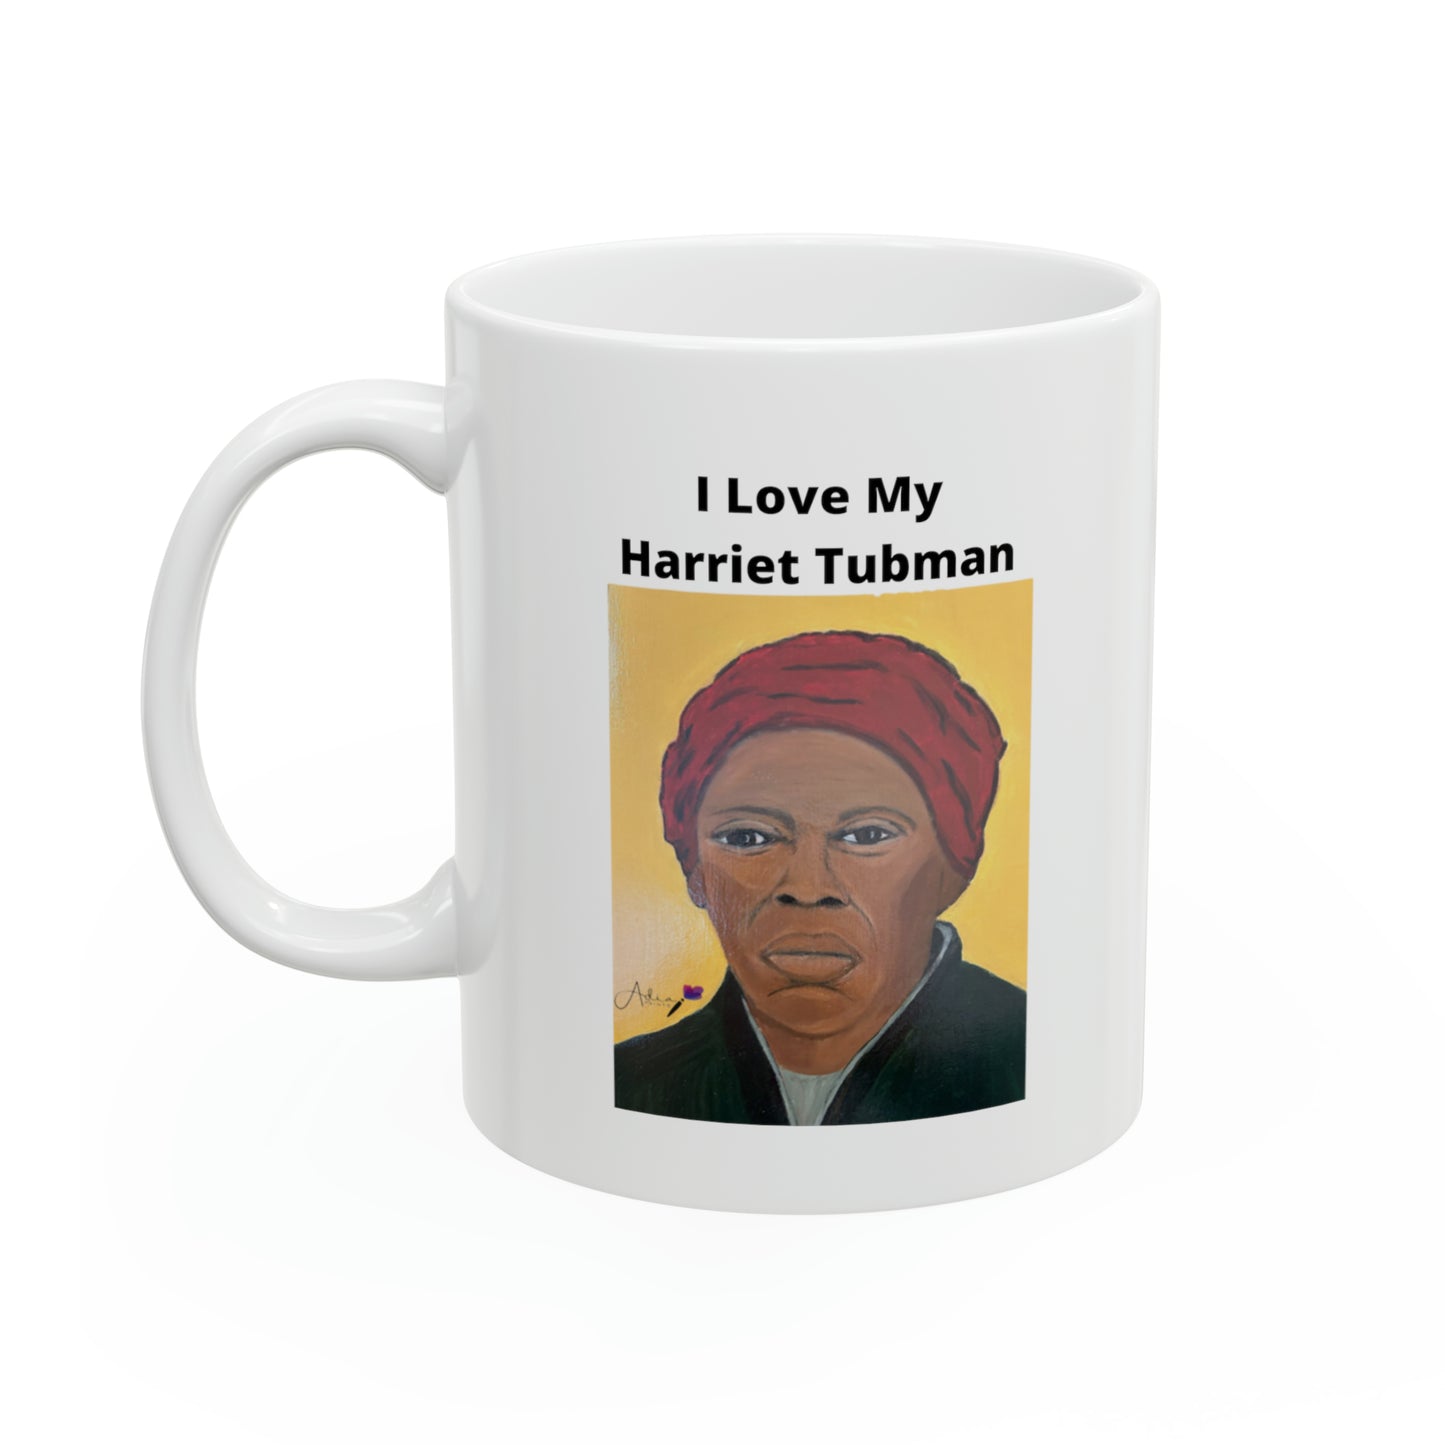 I Love My Harriet Tubman Ceramic Mug, 11oz